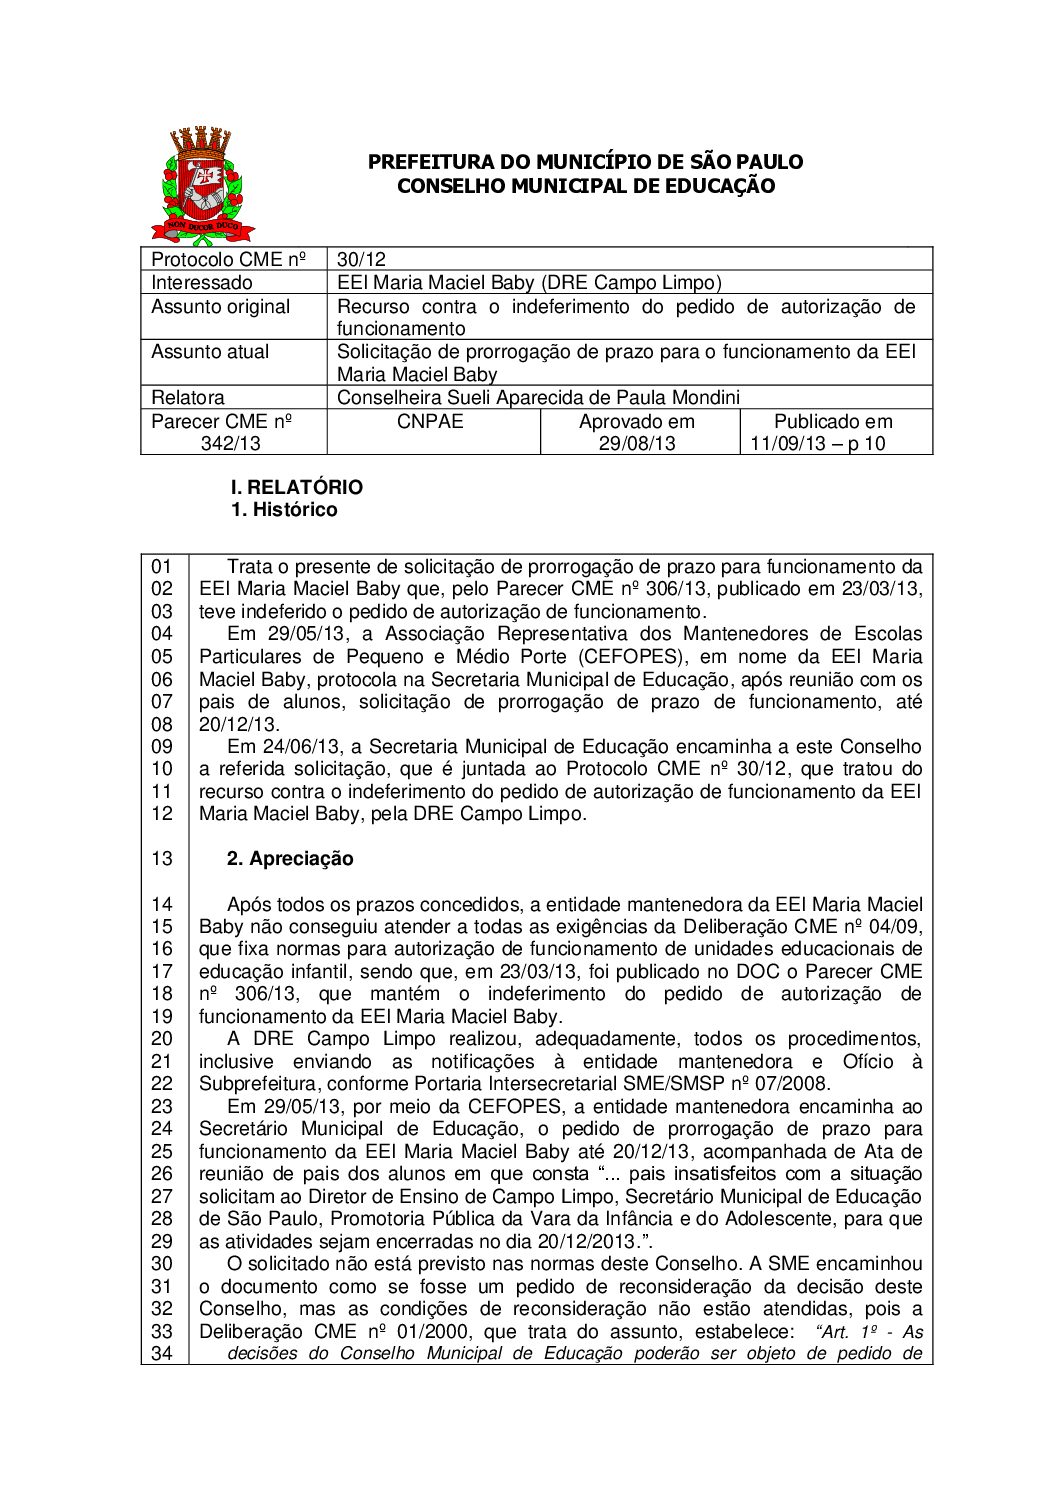 Parecer CME nº 342/2013 - EEI Maria Maciel Baby (DRE Campo Limpo) - Recurso contra o indeferimento do pedido de autorização de funcionamento 